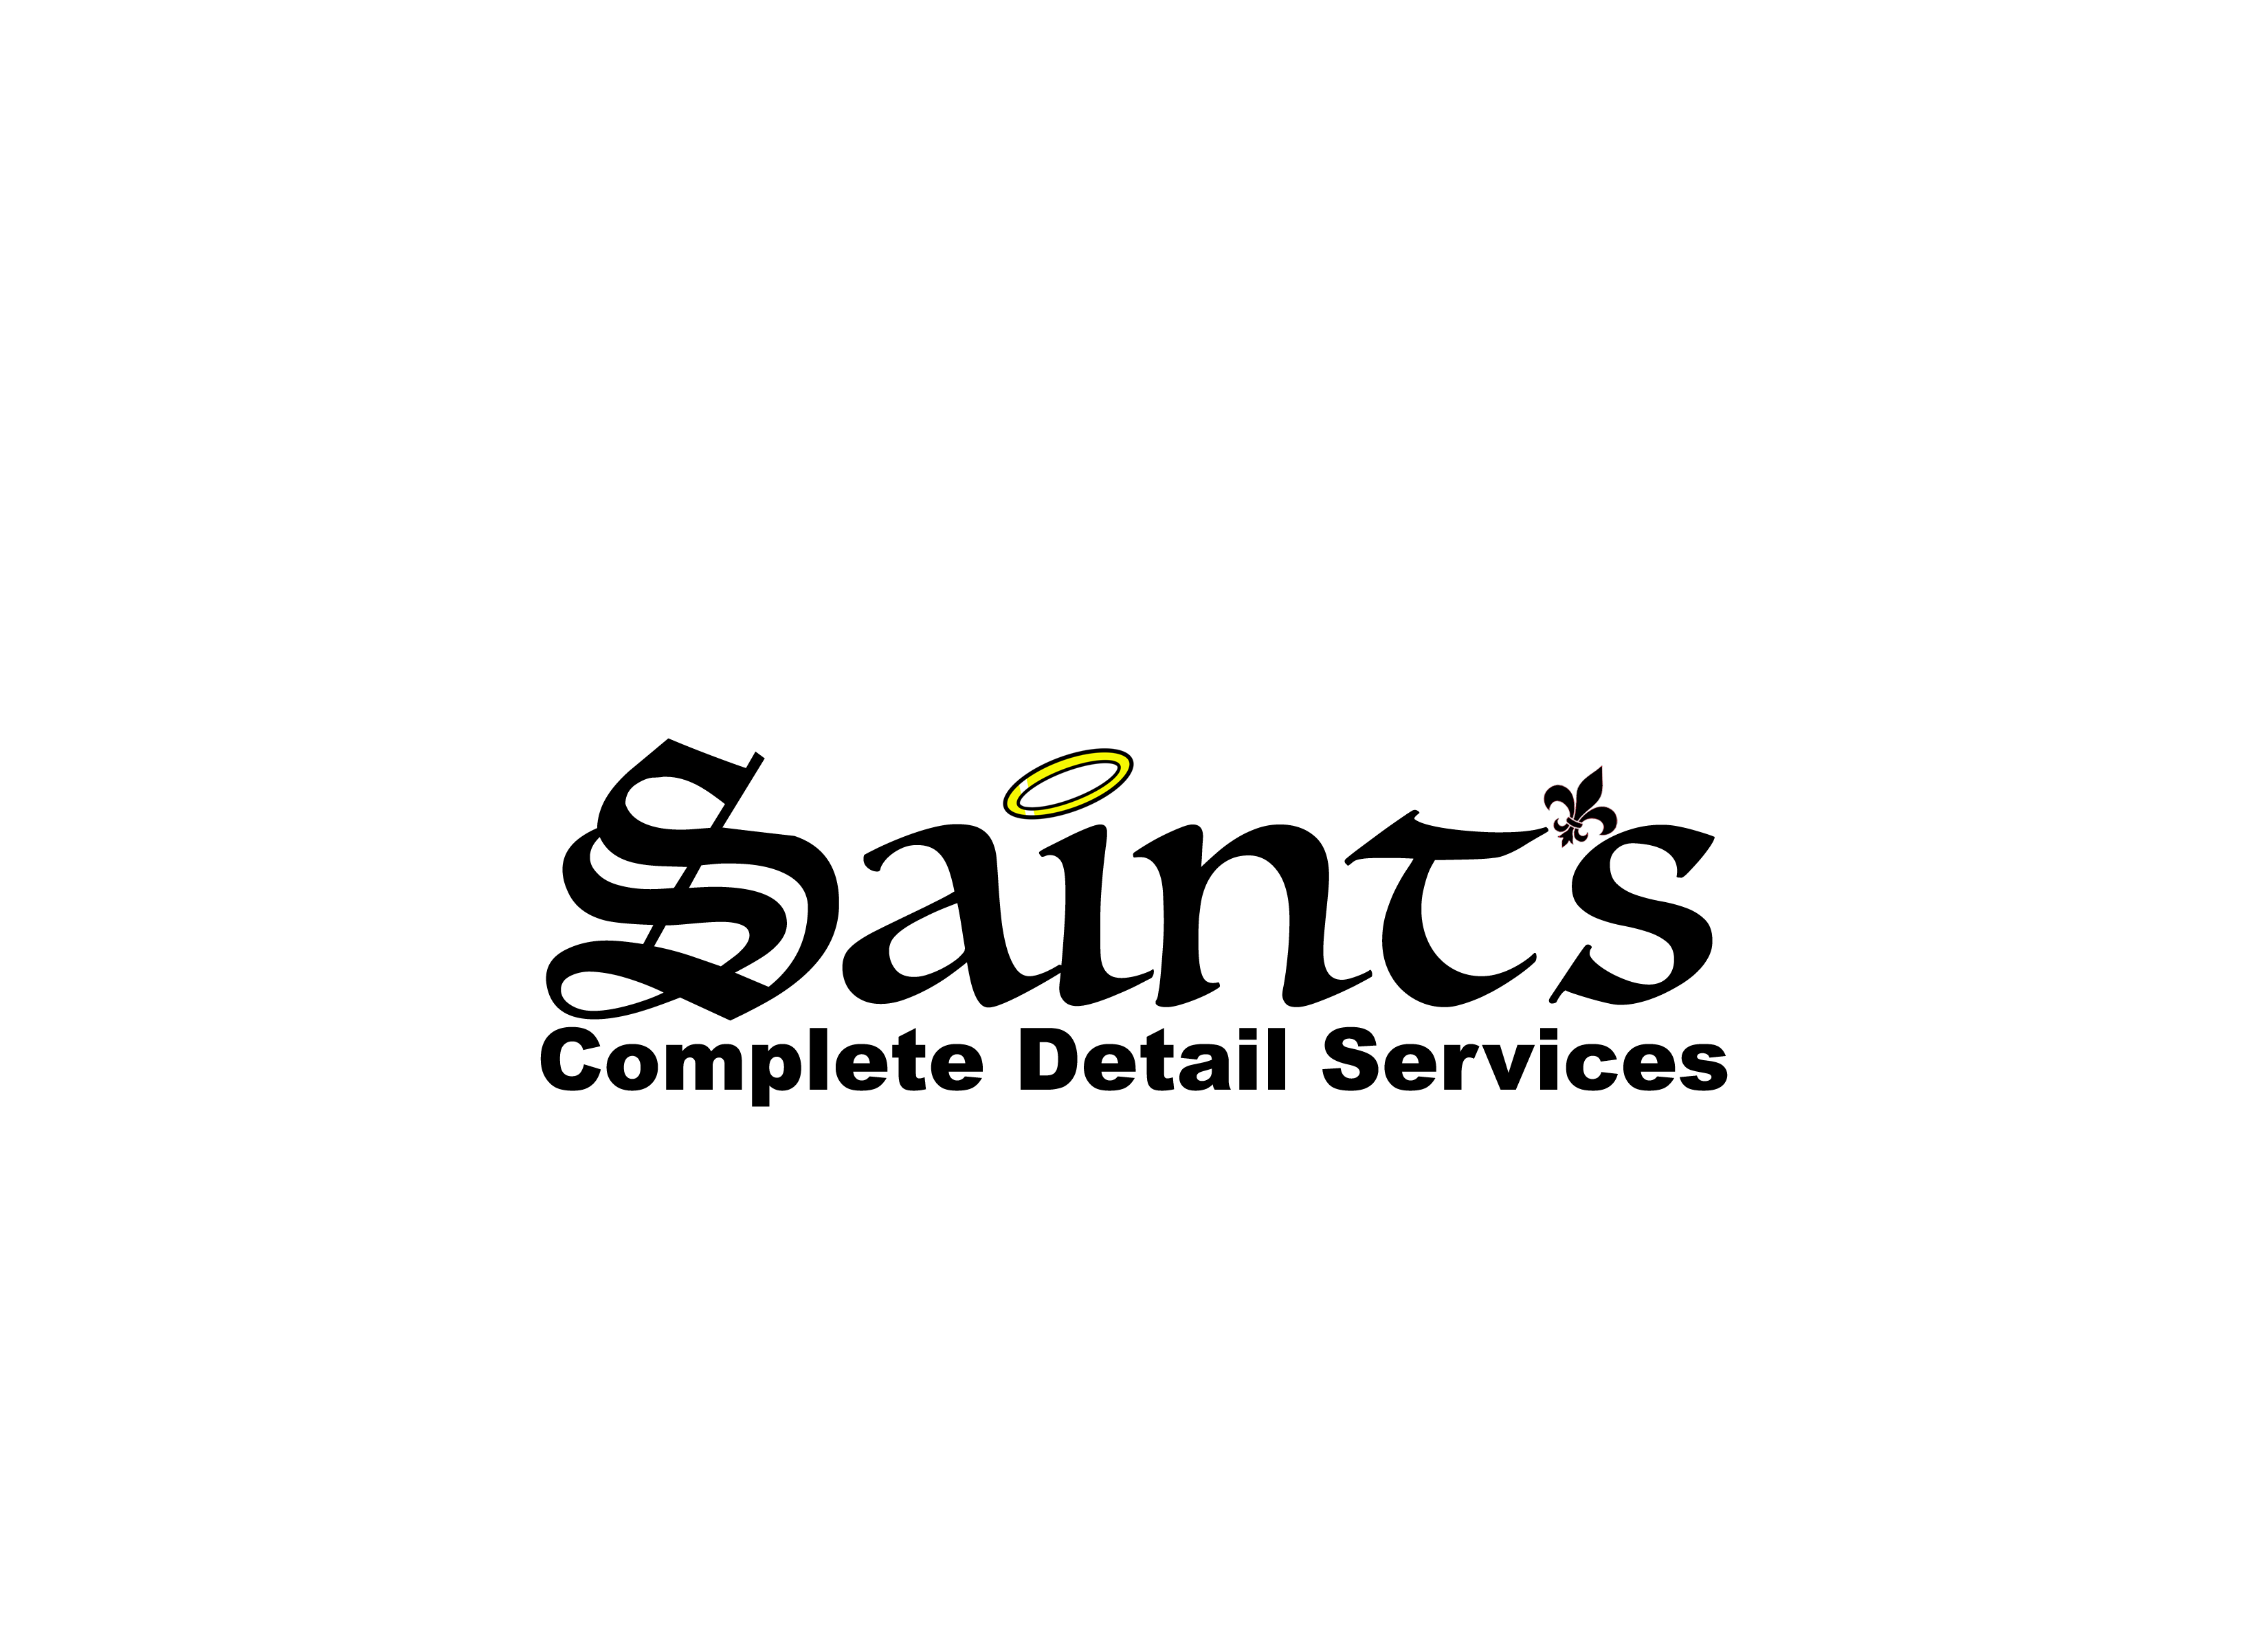 Saints Complete Detail Services Logo